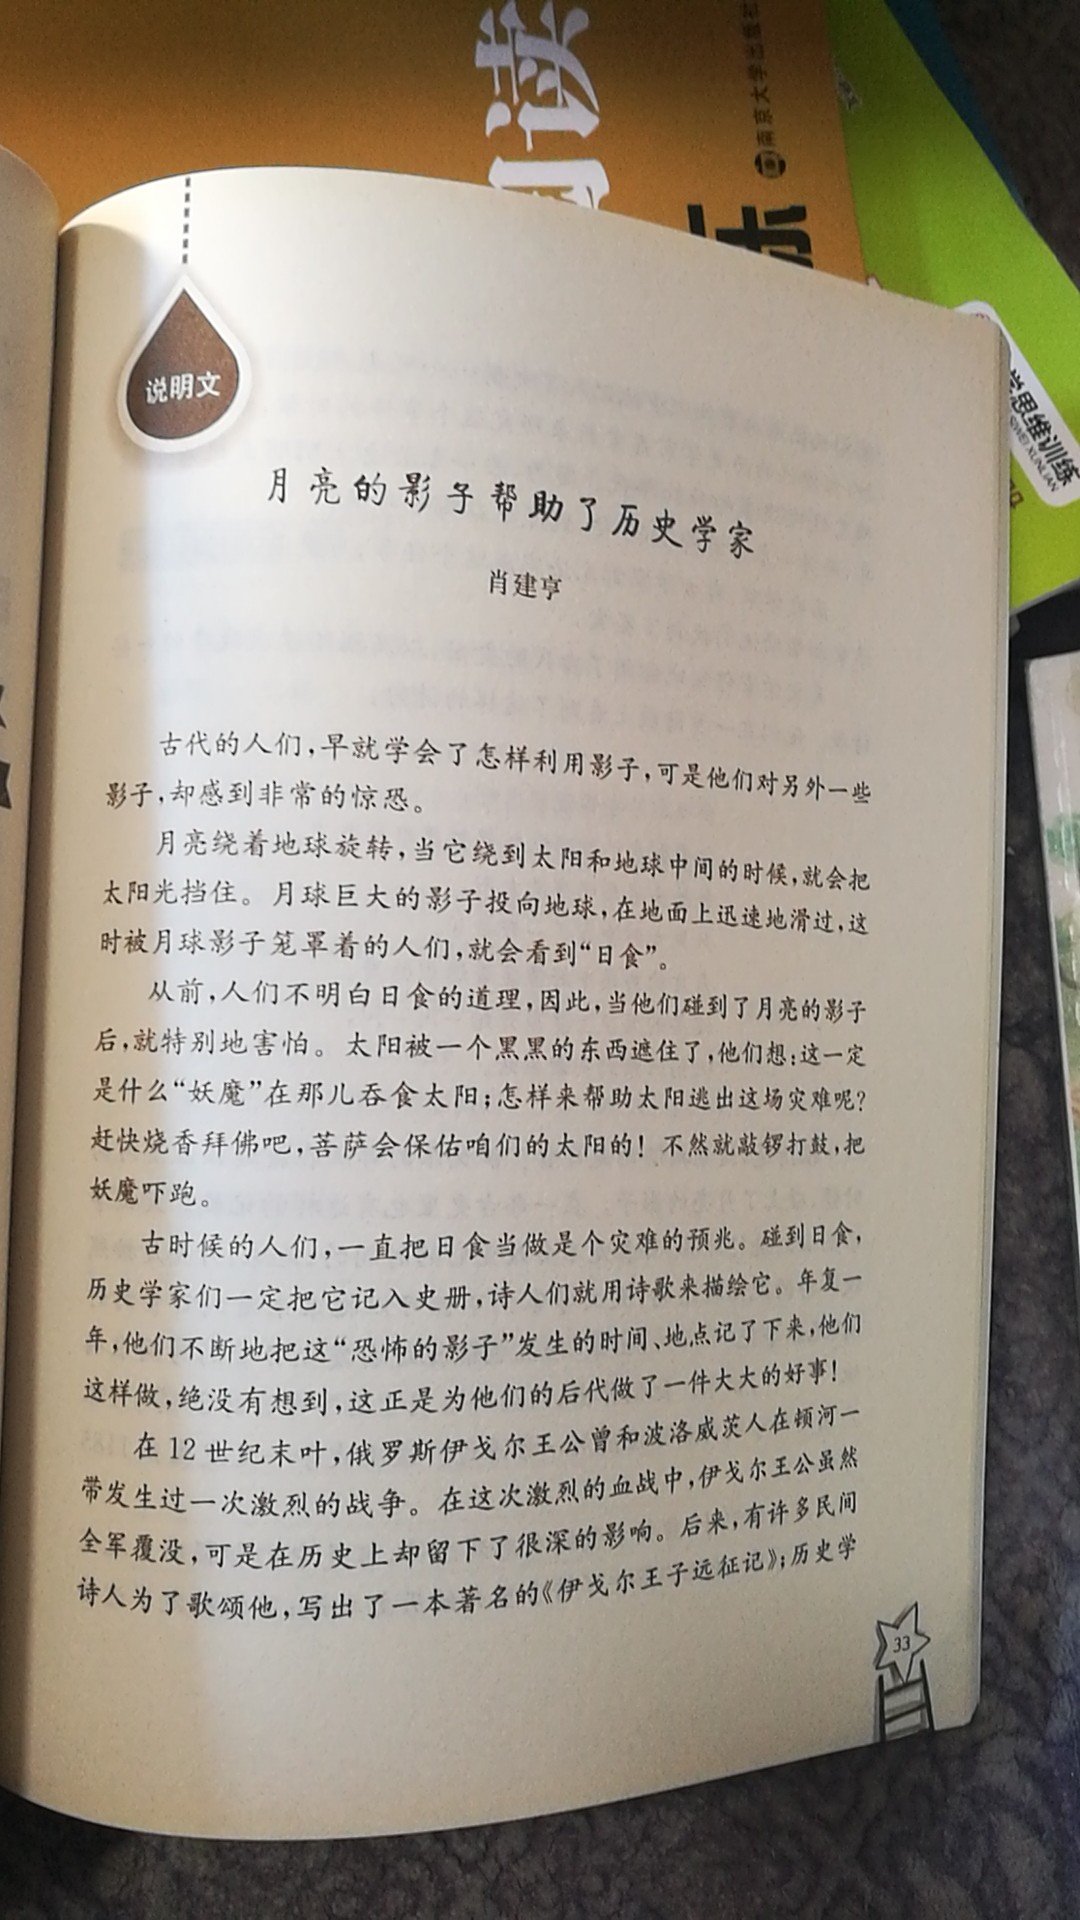 亲近母语领略中华文字的博大精深。假期其实老母亲也是喜欢小朋友在家多朗读美文。